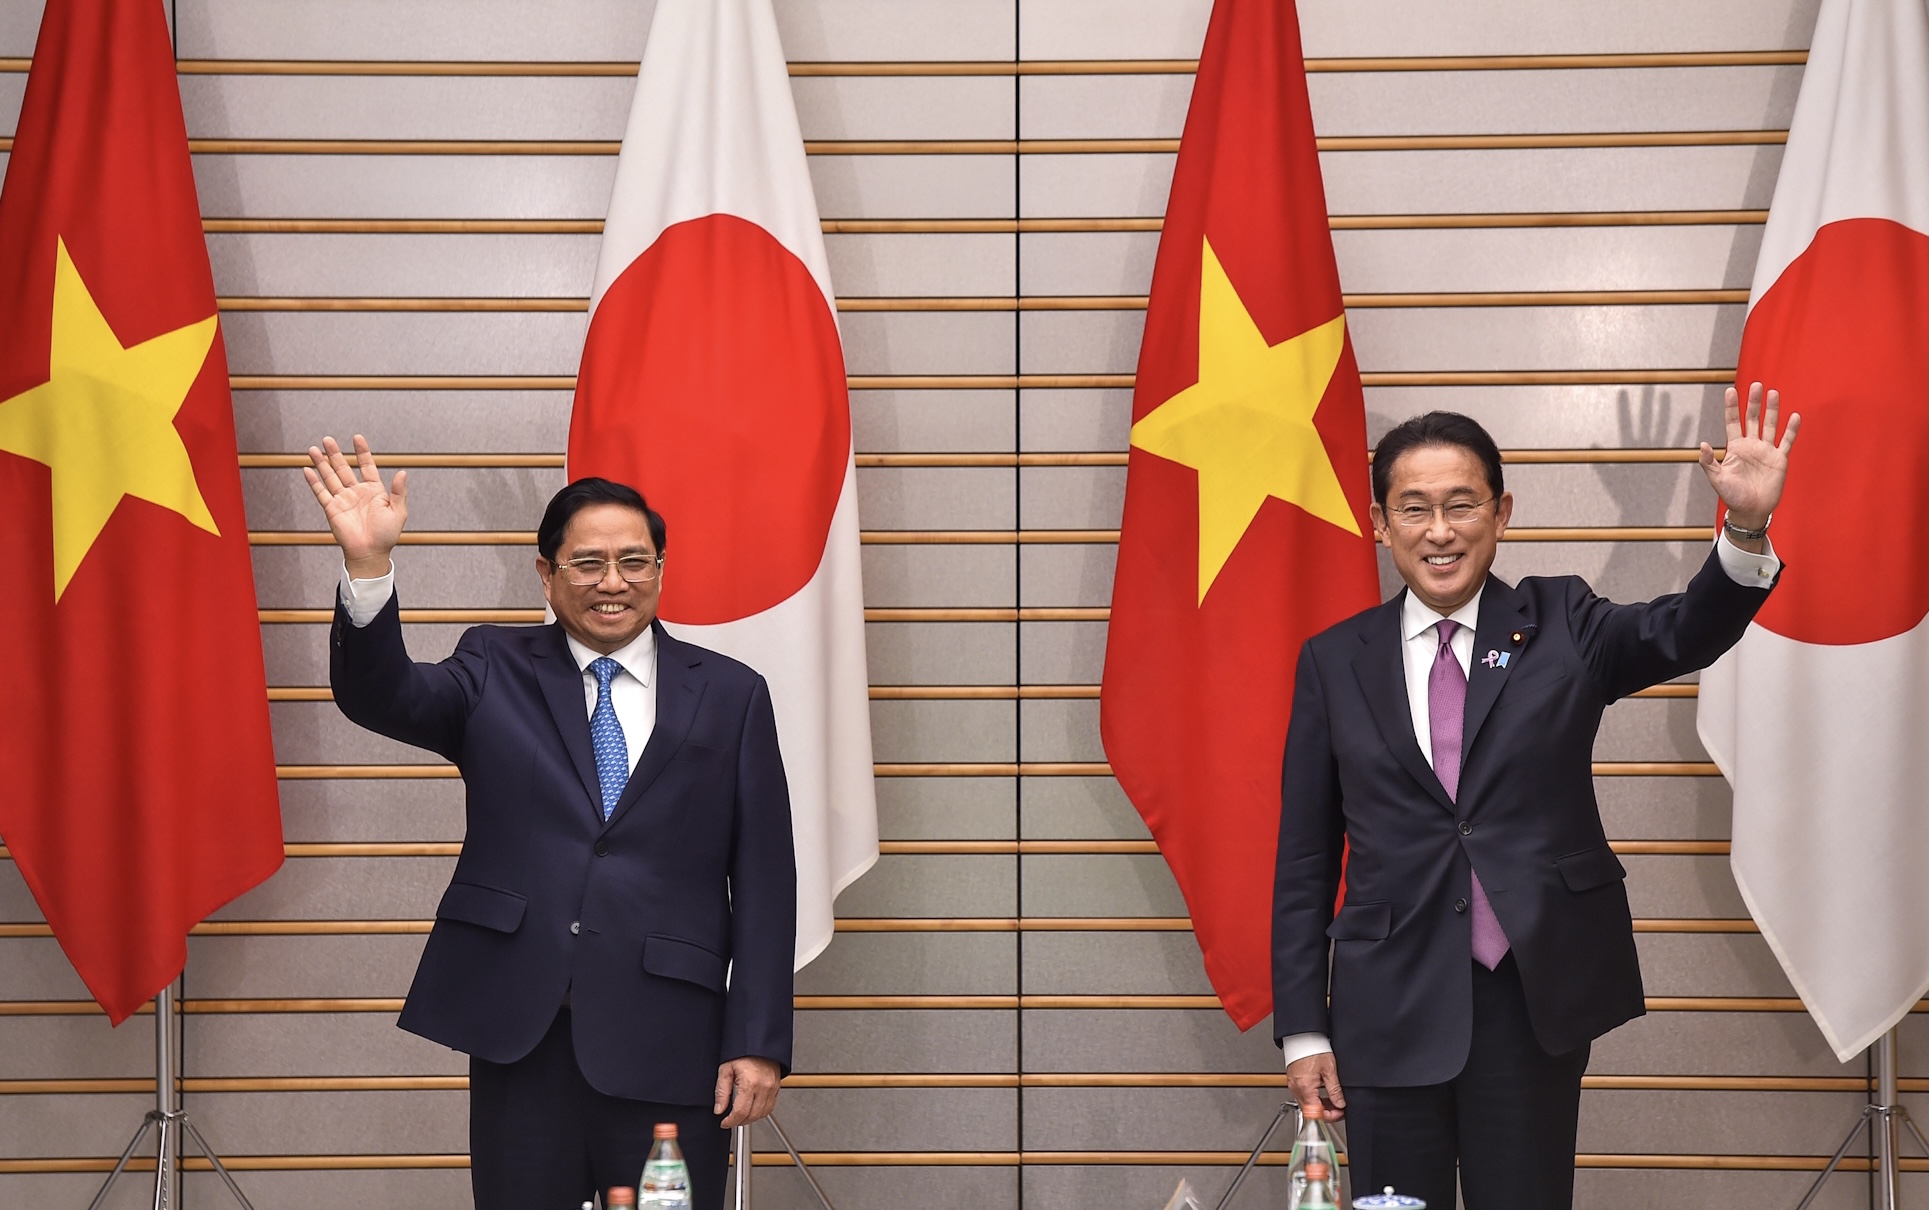 Hội đàm thượng đỉnh Việt Nam-Nhật Bản: Nhật Bản là đối tác thương mại lớn nhất của Việt Nam và một trong những người dẫn đầu phát triển kinh tế ở châu Á. Hội đàm thượng đỉnh giữa hai nước sẽ tạo ra nhiều cơ hội tuyệt vời cho cộng đồng kinh doanh và hợp tác với nhau khi các nhà lãnh đạo gặp mặt để thảo luận về các vấn đề quan trọng.